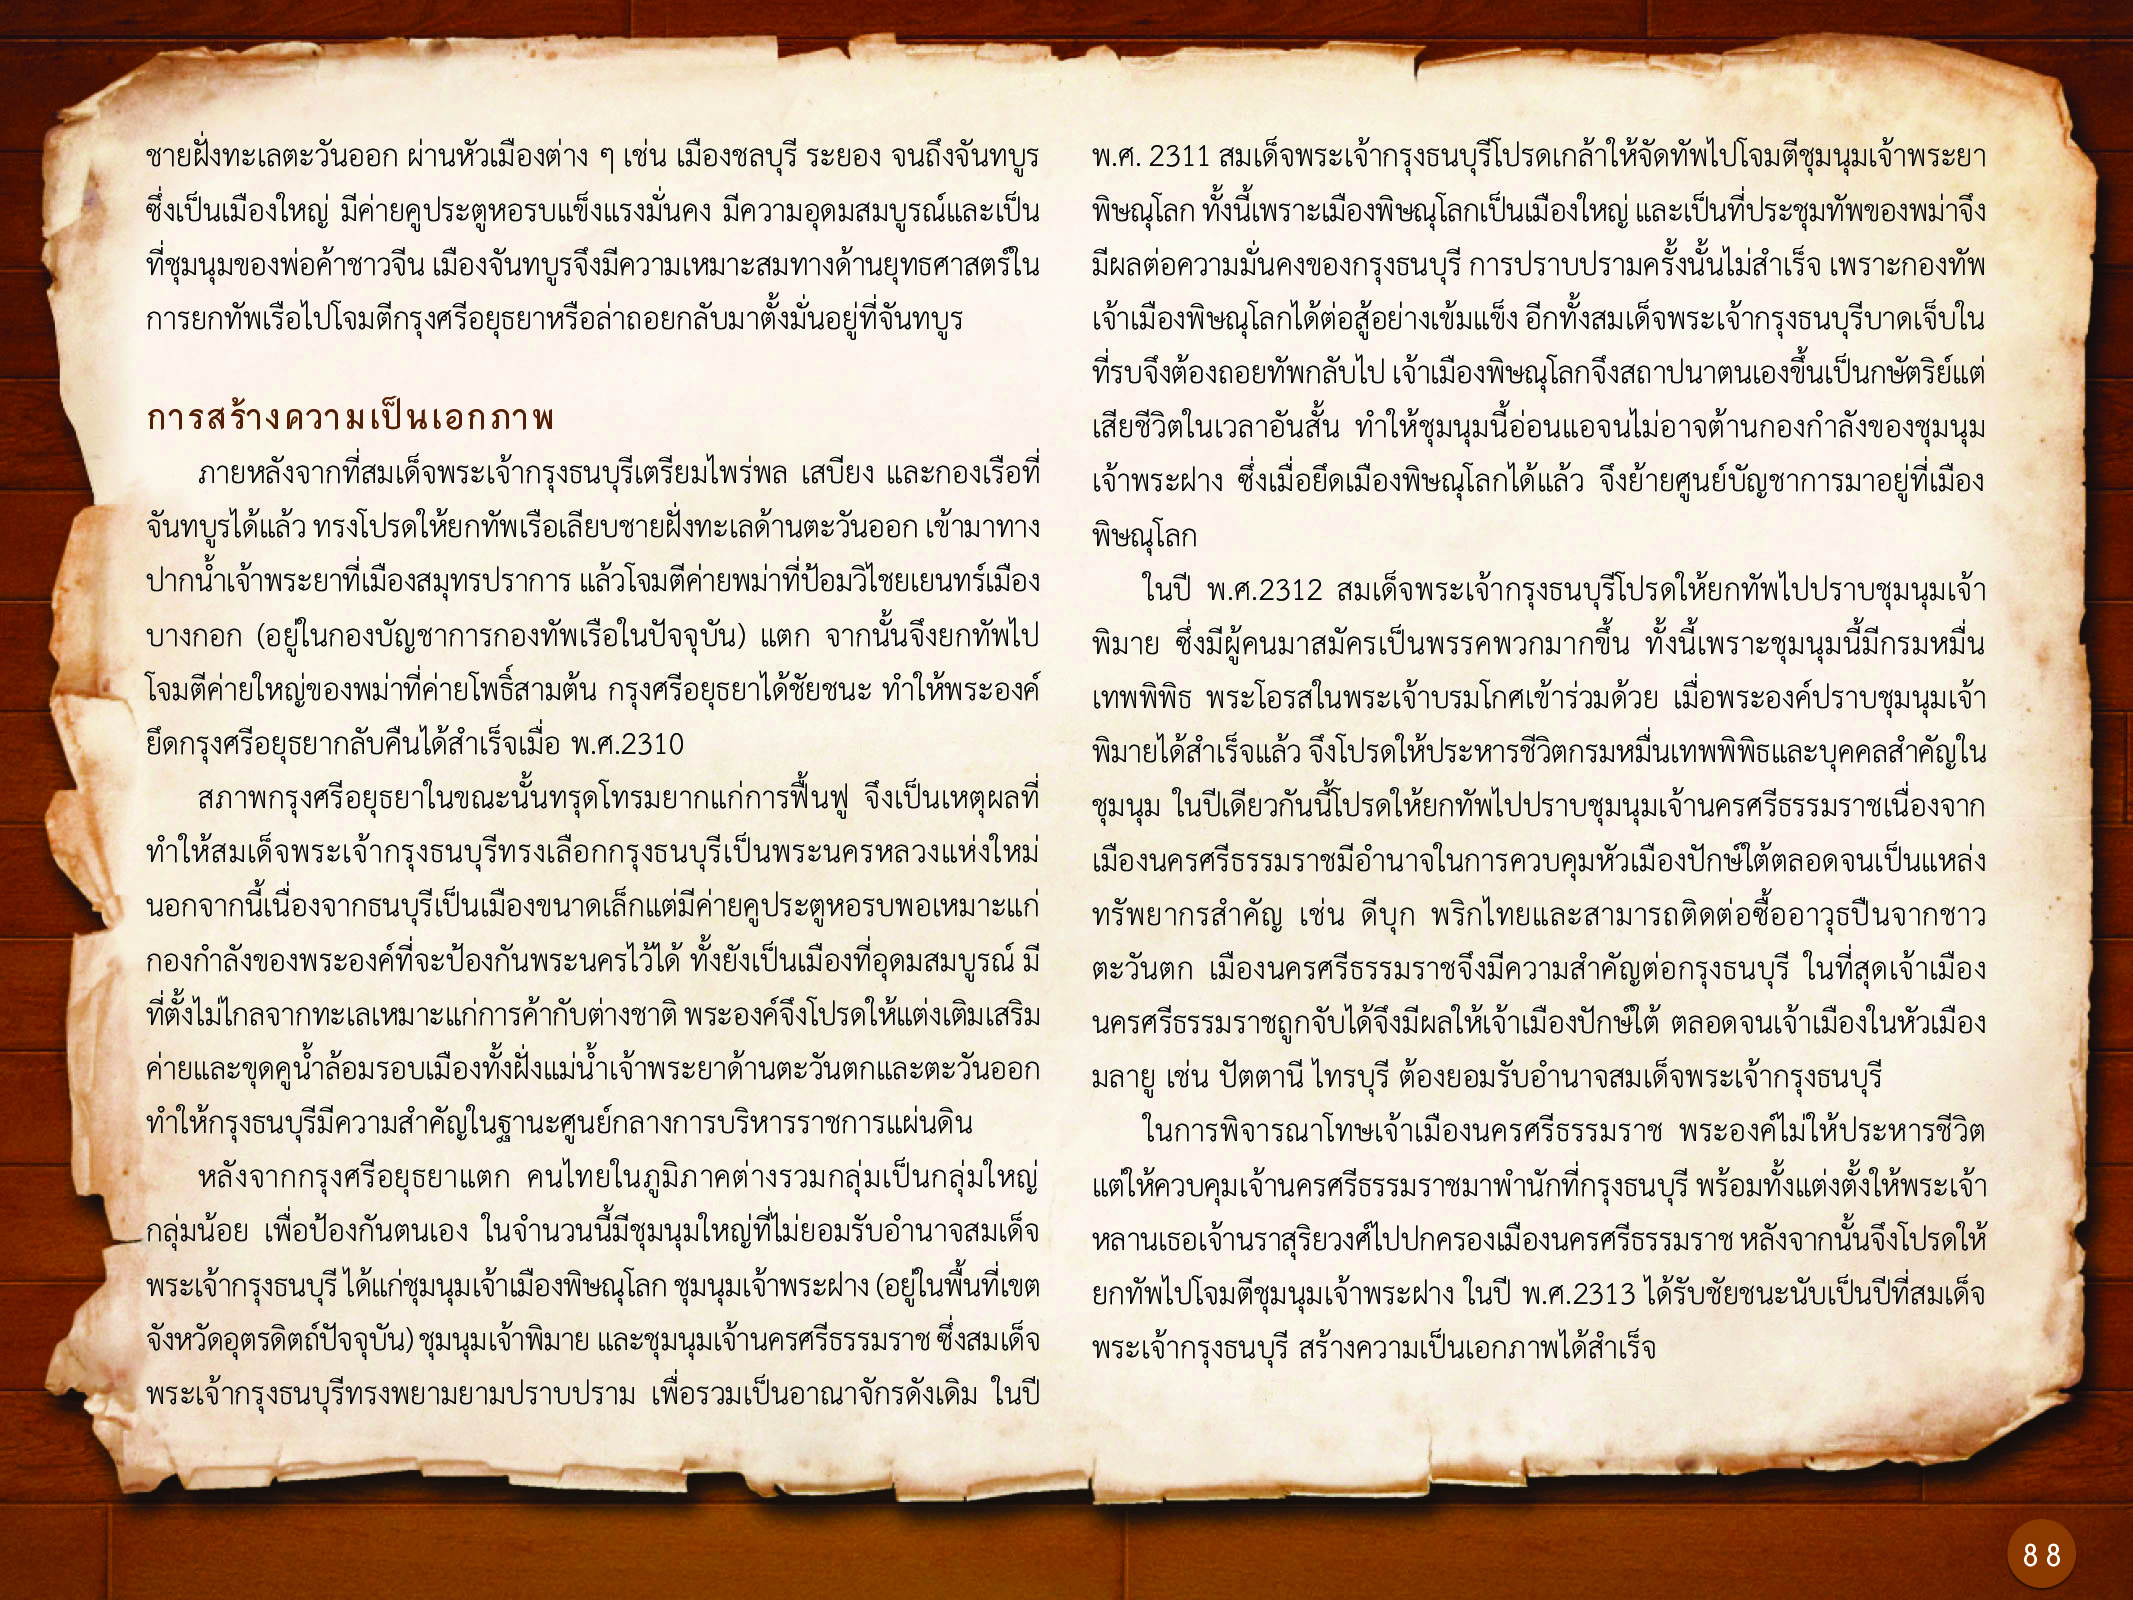 ประวัติศาสตร์กรุงธนบุรี ./images/history_dhonburi/88.jpg